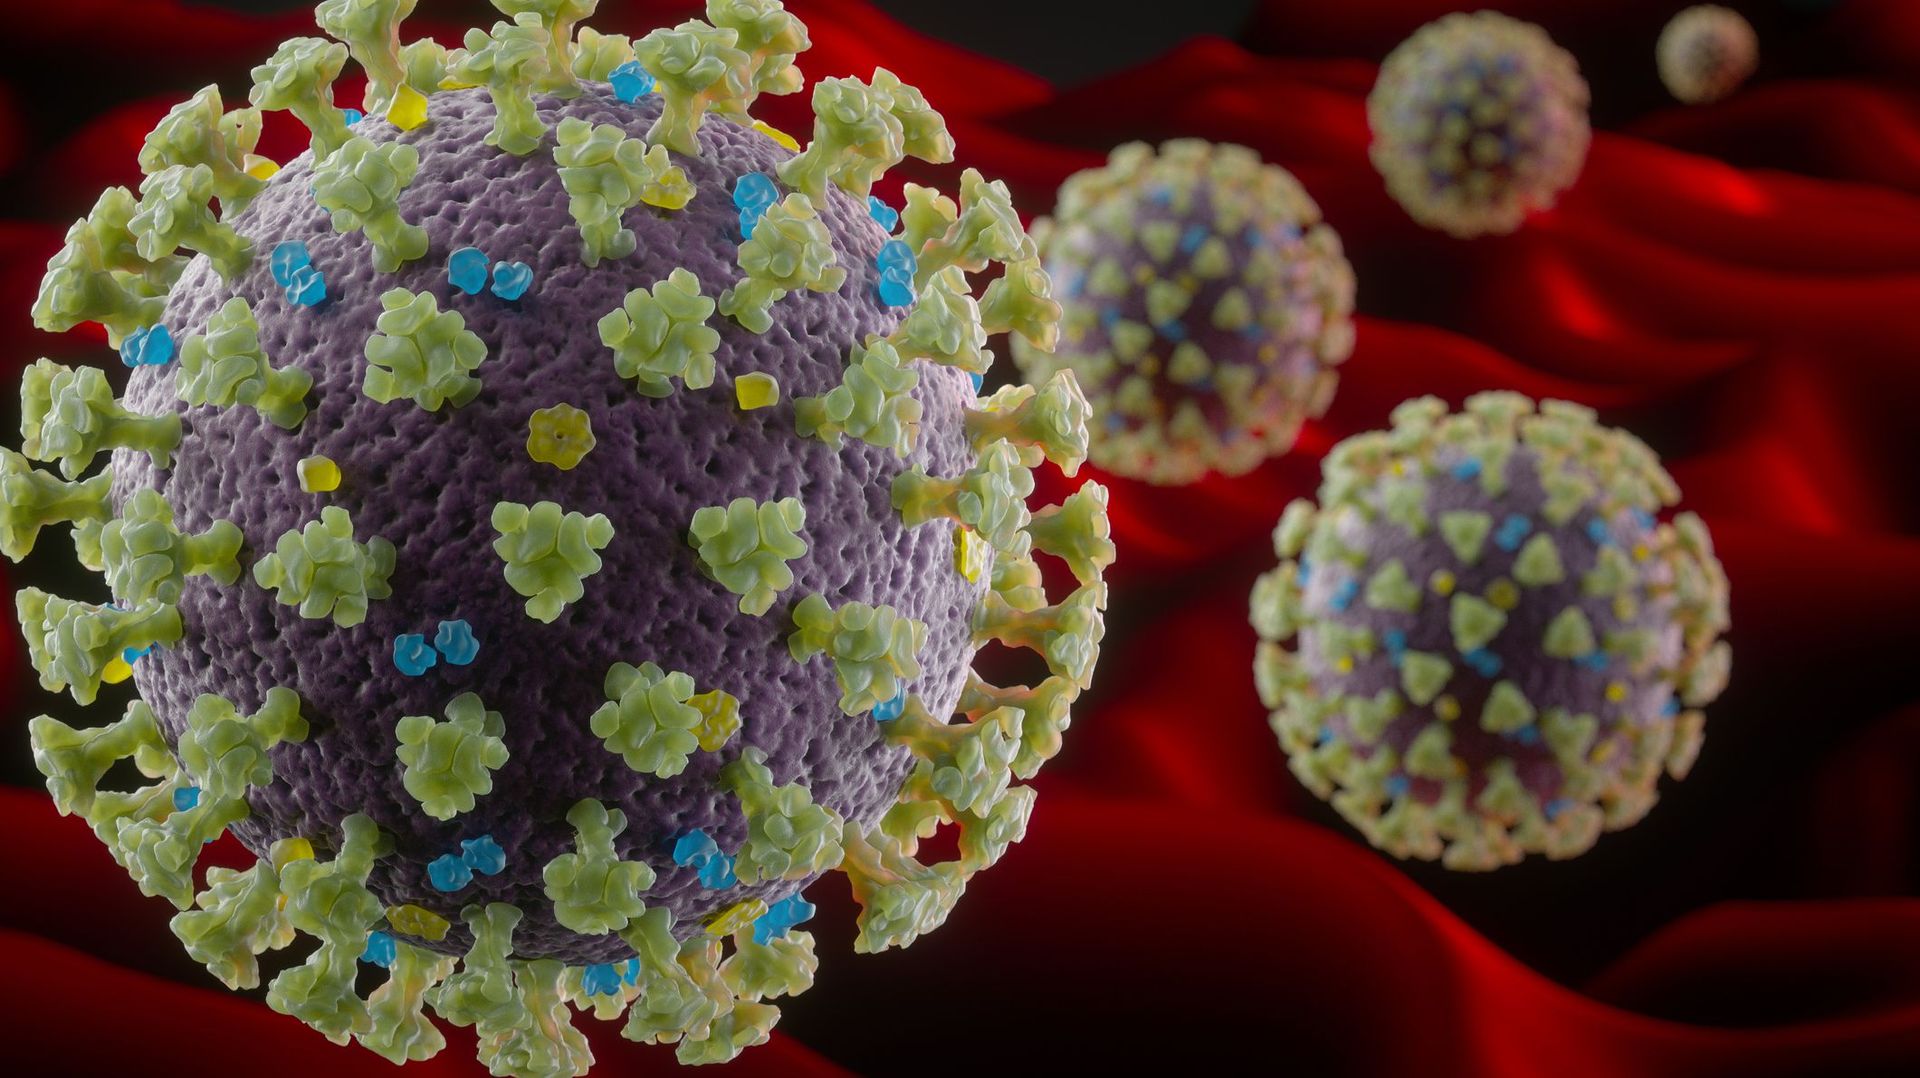 coronavirus-le-bilan-chiffre-de-la-pandemie-de-covid-19-dans-le-monde-431193-morts-et-7848160-cas-officiellement-recenses